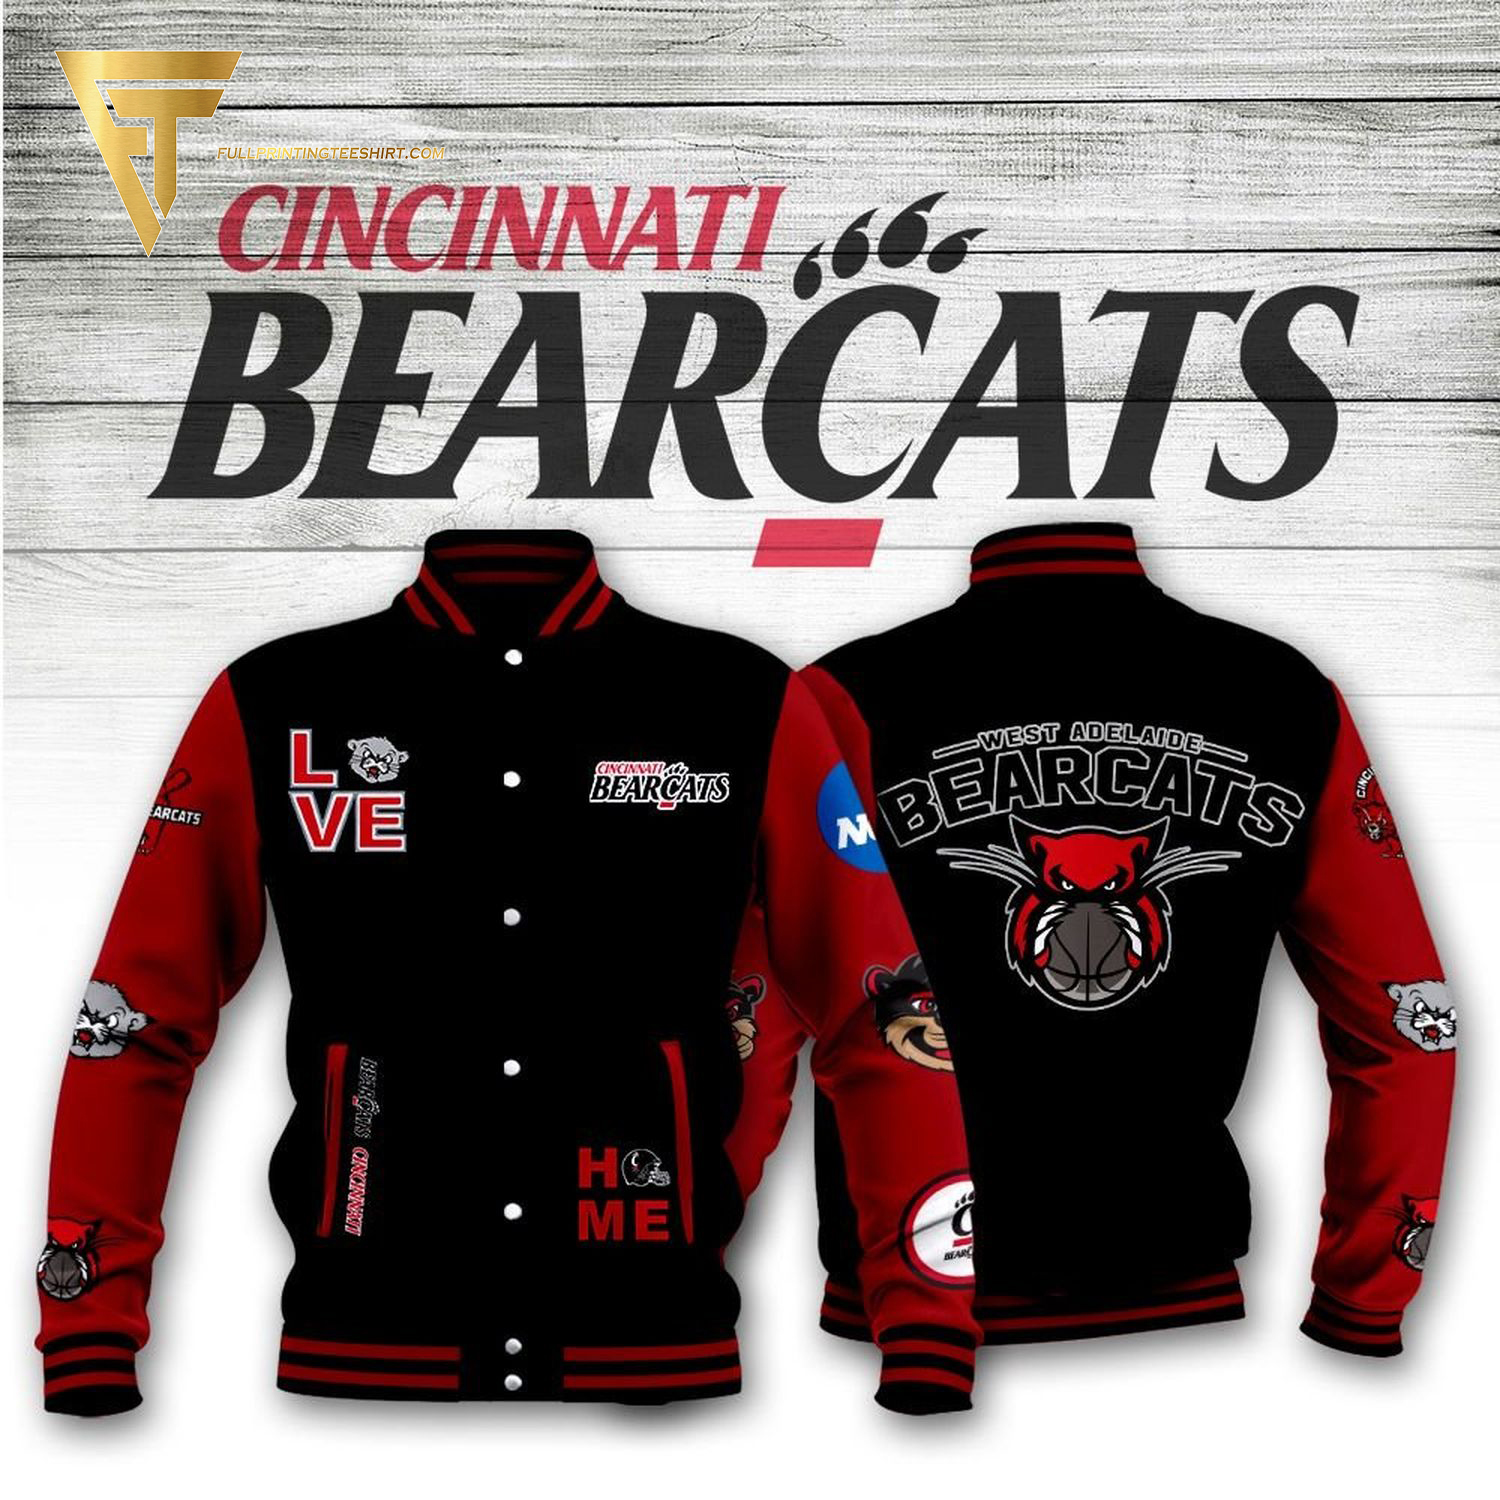 The Cincinnati Bearcats Full Print Baseball Jacket